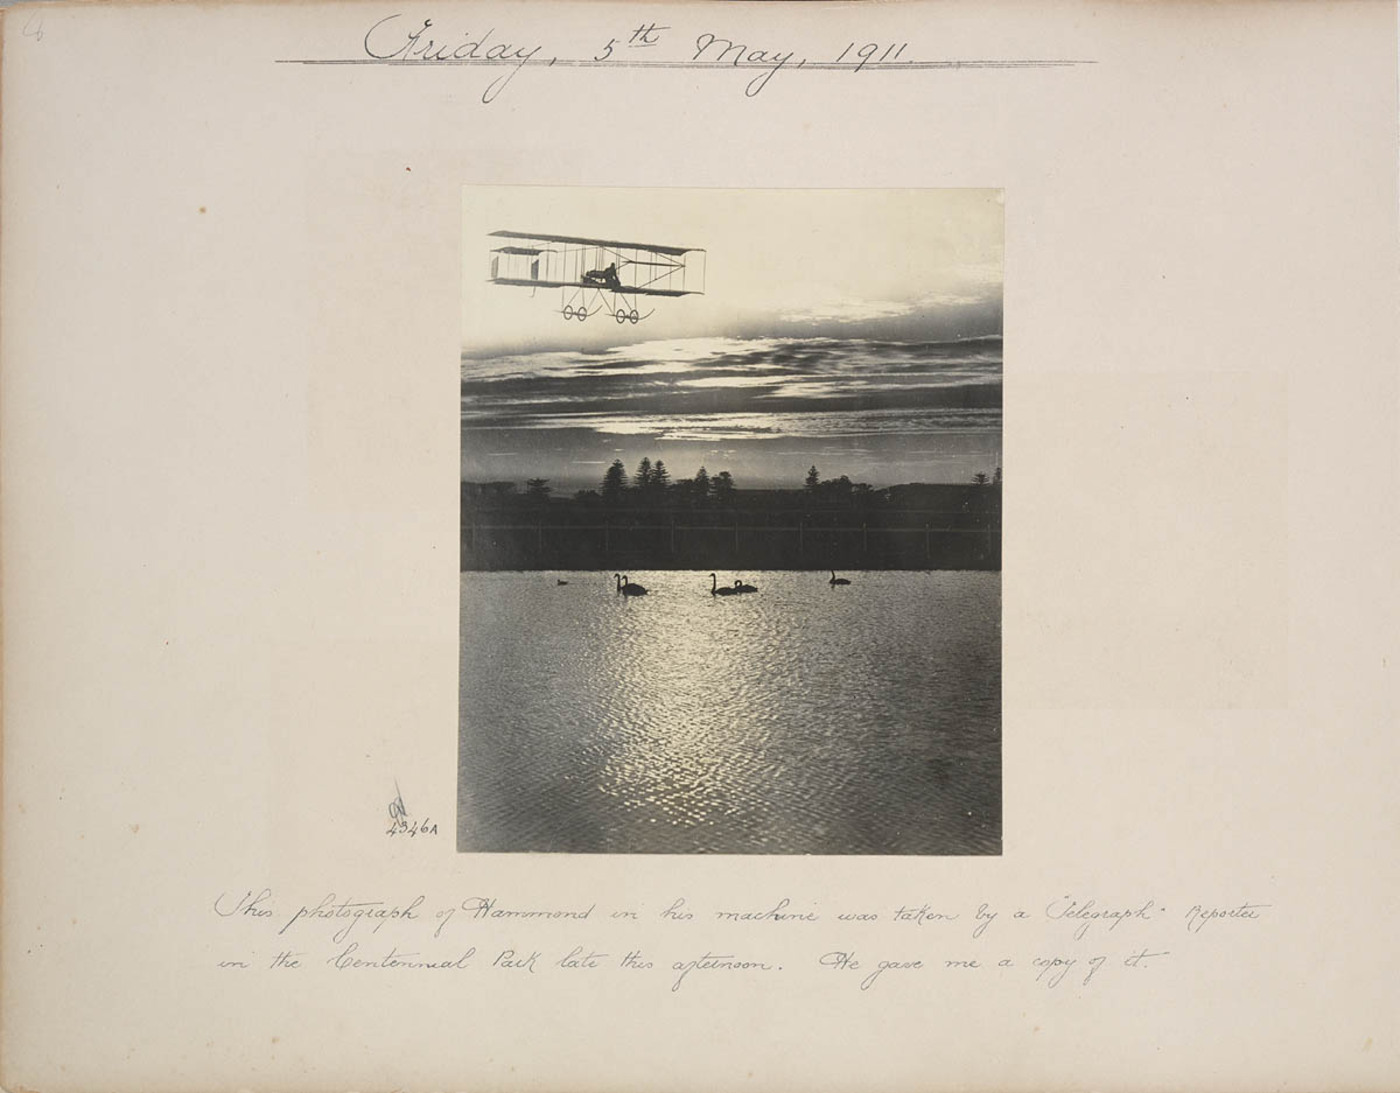 J.J. Hammond's first flight in Sydney, 1911